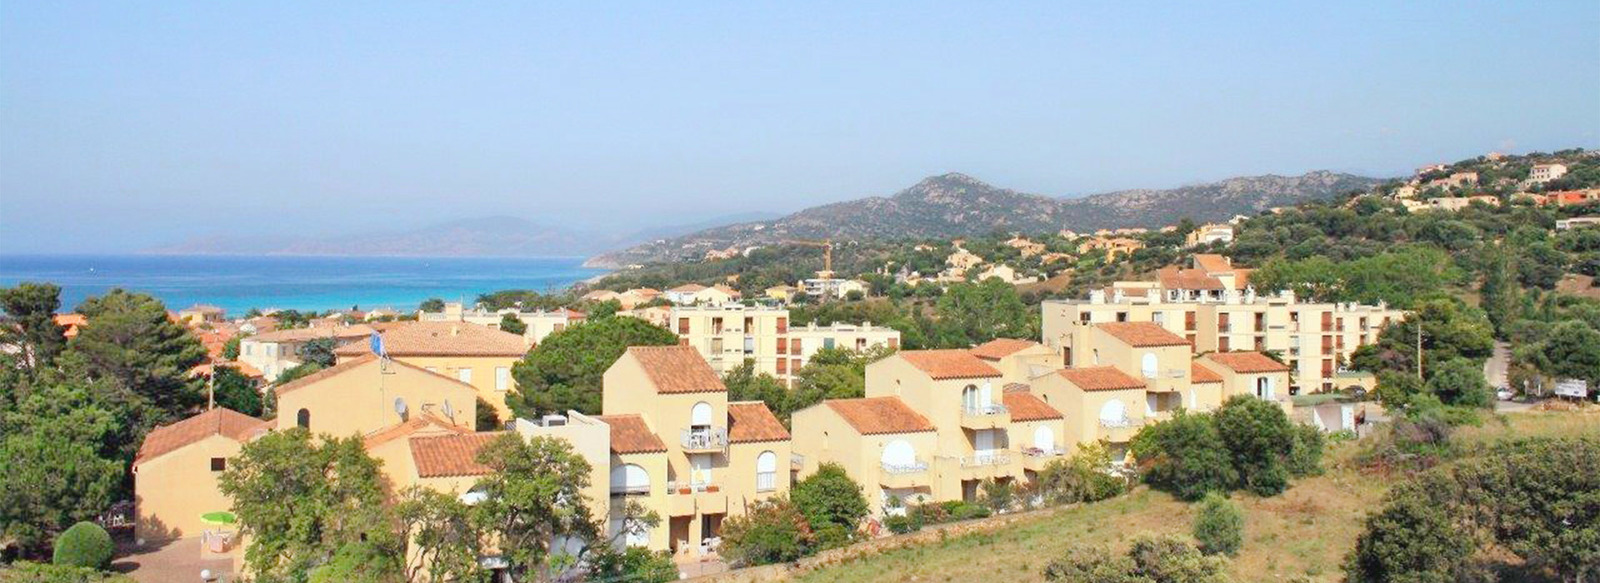 In posizione ideale a Isola Rossa in Corsica